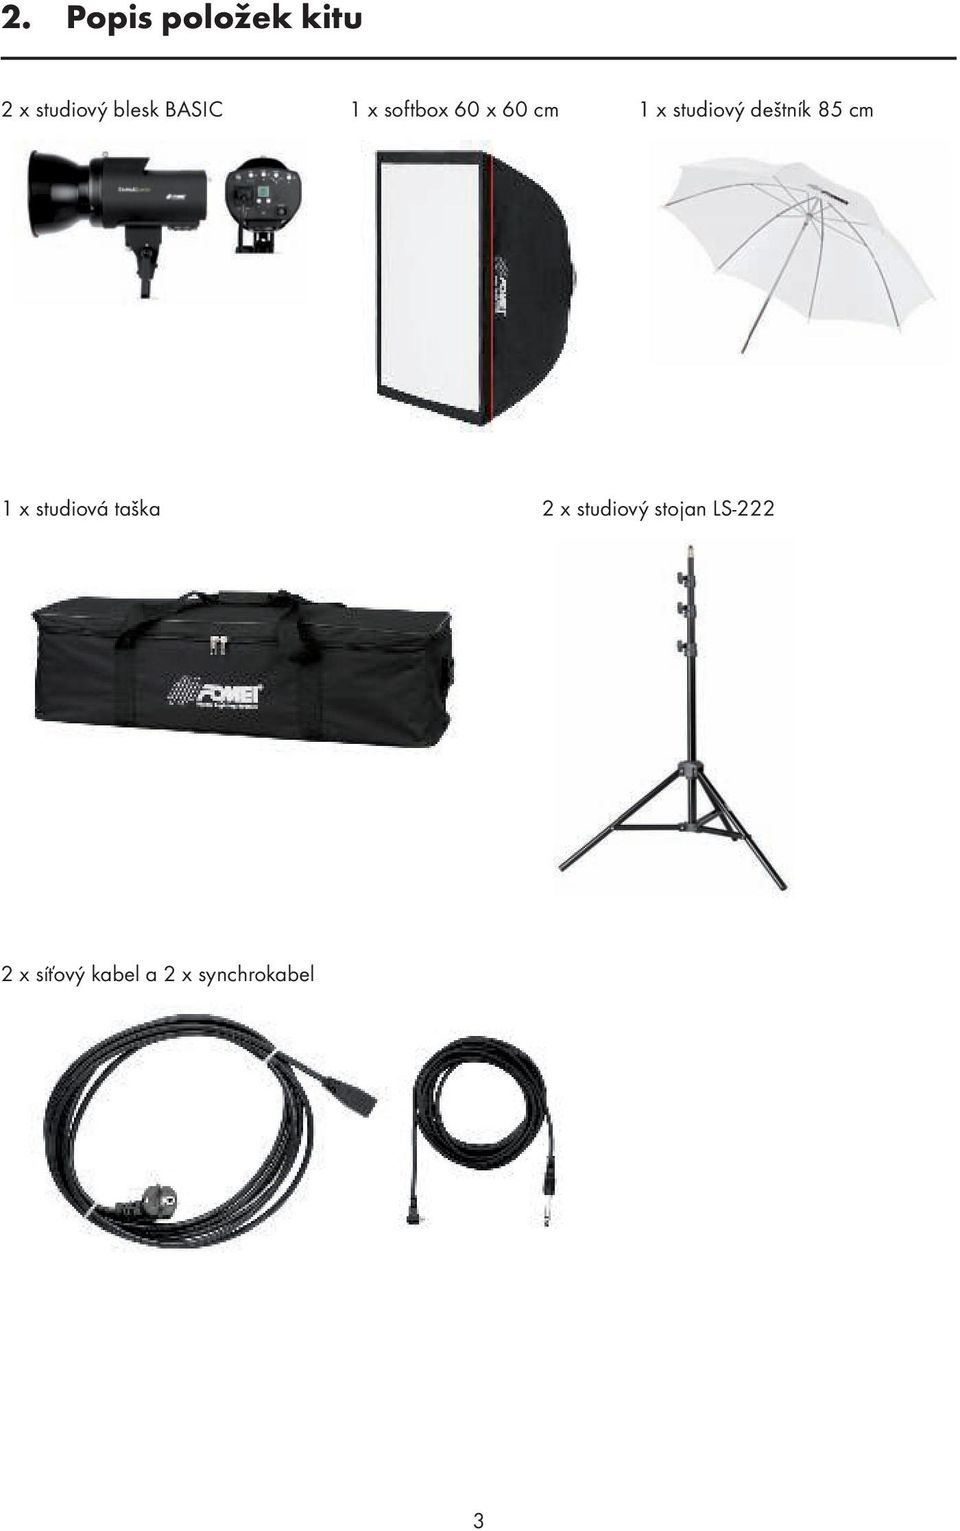 Basic - 200/400, studiový kit - PDF Stažení zdarma